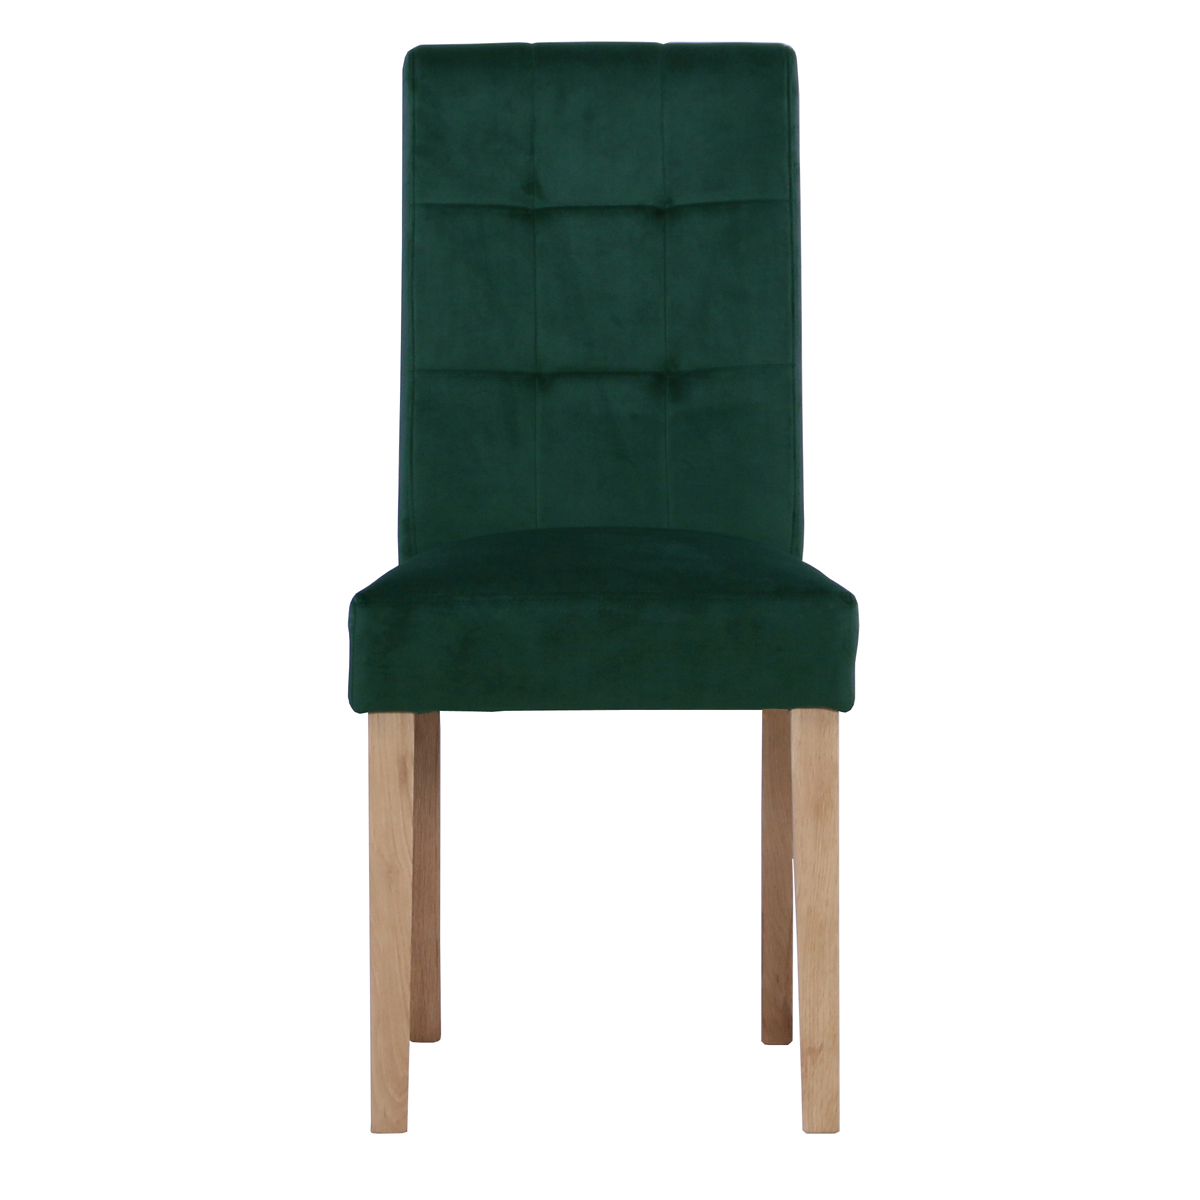 New Oak Ash 104 Chair